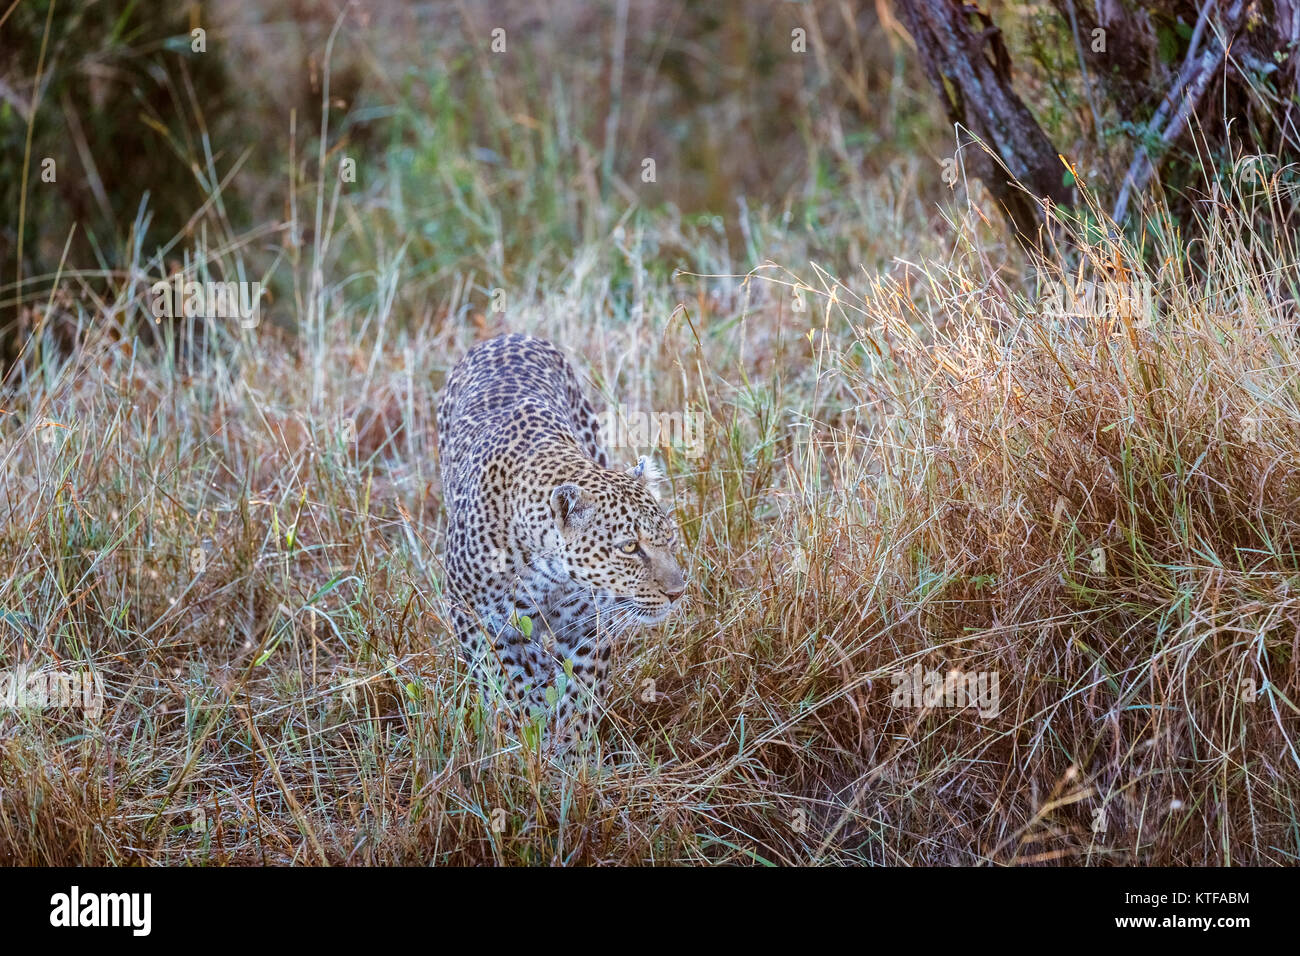 Erwachsene Frau Leopard (Panthera pardus) Herumstreichen in langen Gras, von Ihrem gefleckten Fell getarnt Verstecken, Masai Mara, Kenia Stockfoto